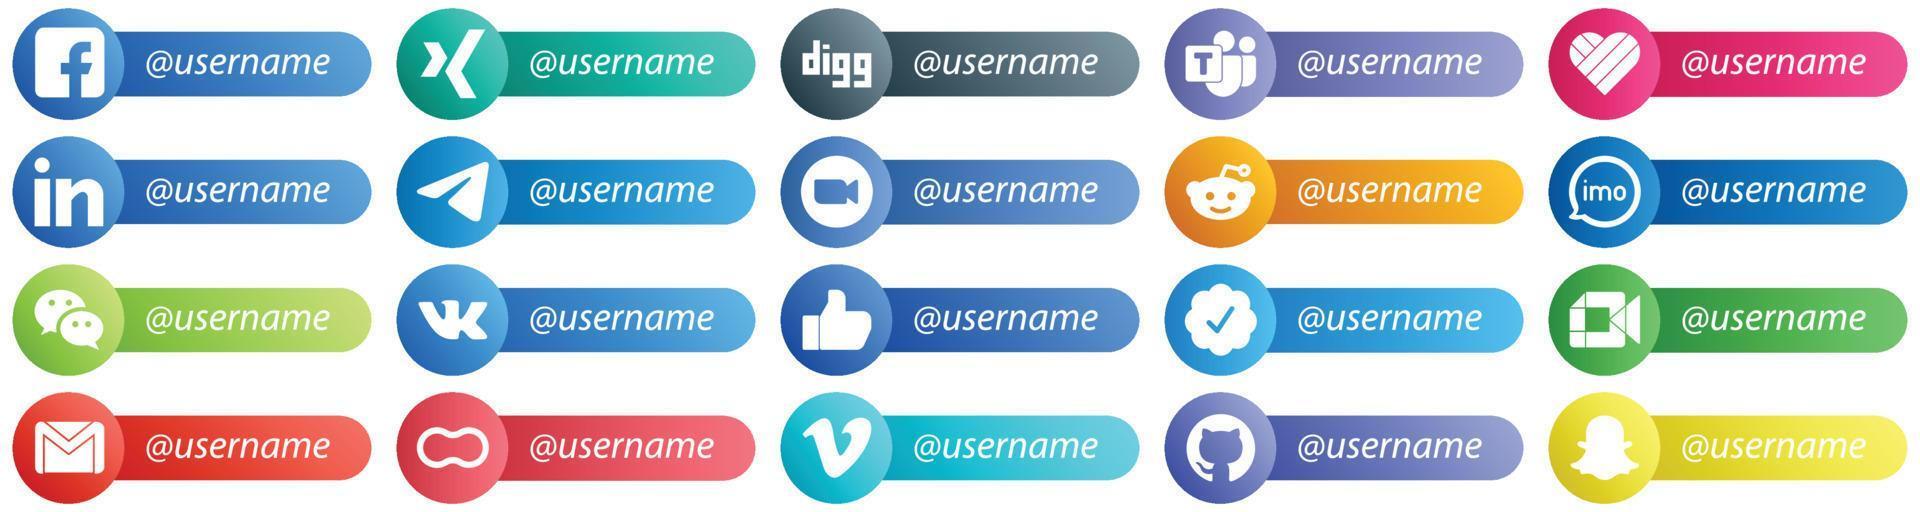 Kartenstil Folgen Sie mir Social-Media-Plattform-Icon-Set 20 Icons wie reddit. Treffen. linkedin- und video-symbole. kreativ und hochauflösend vektor